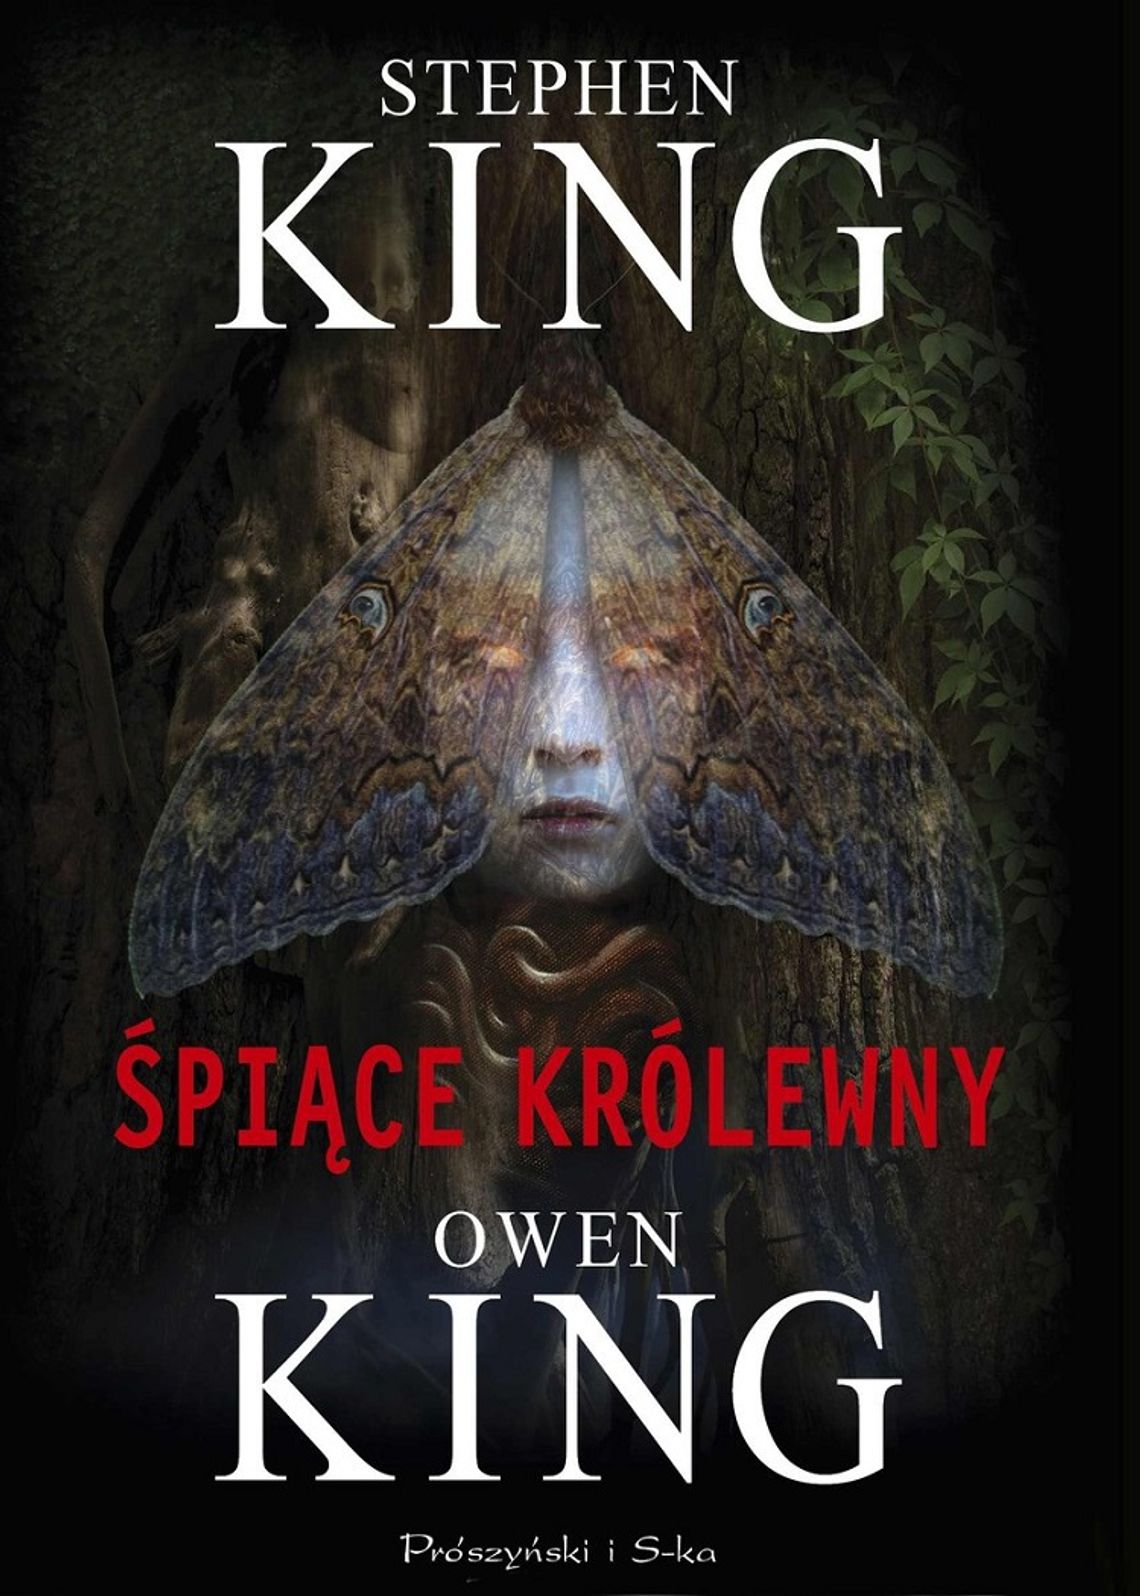 Stephen King, Owen King "Śpiące królewny"; wyd. Prószyński i S-ka